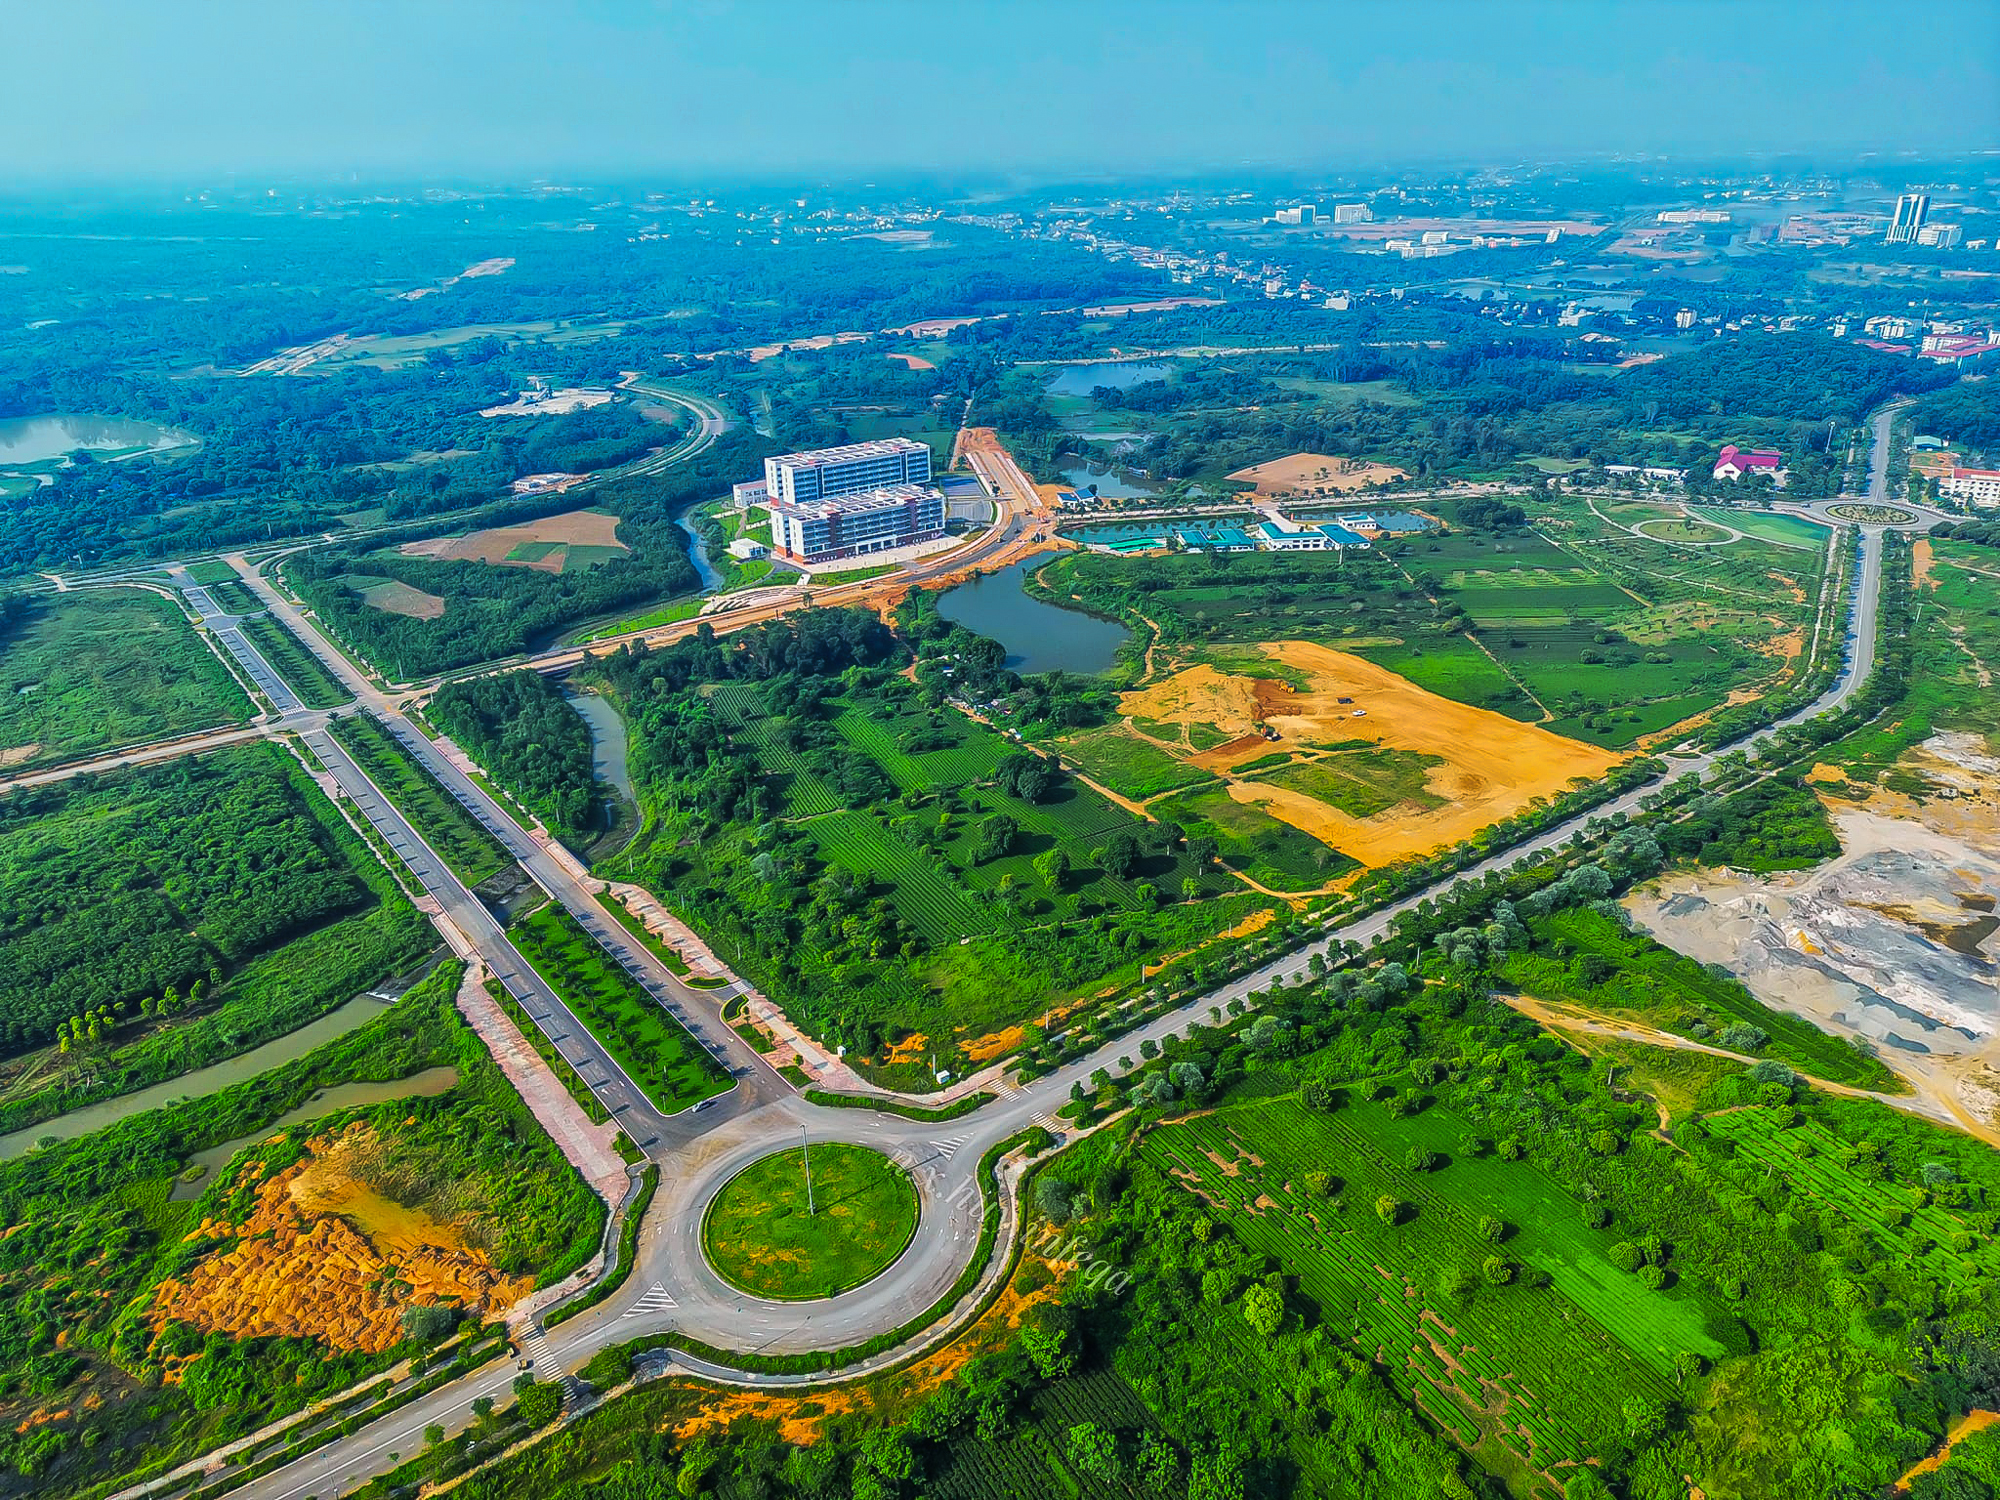 Đại học rộng nhất Việt Nam - diện tích gấp đôi quận Hoàn Kiếm, Hà Nội - Ảnh 3.